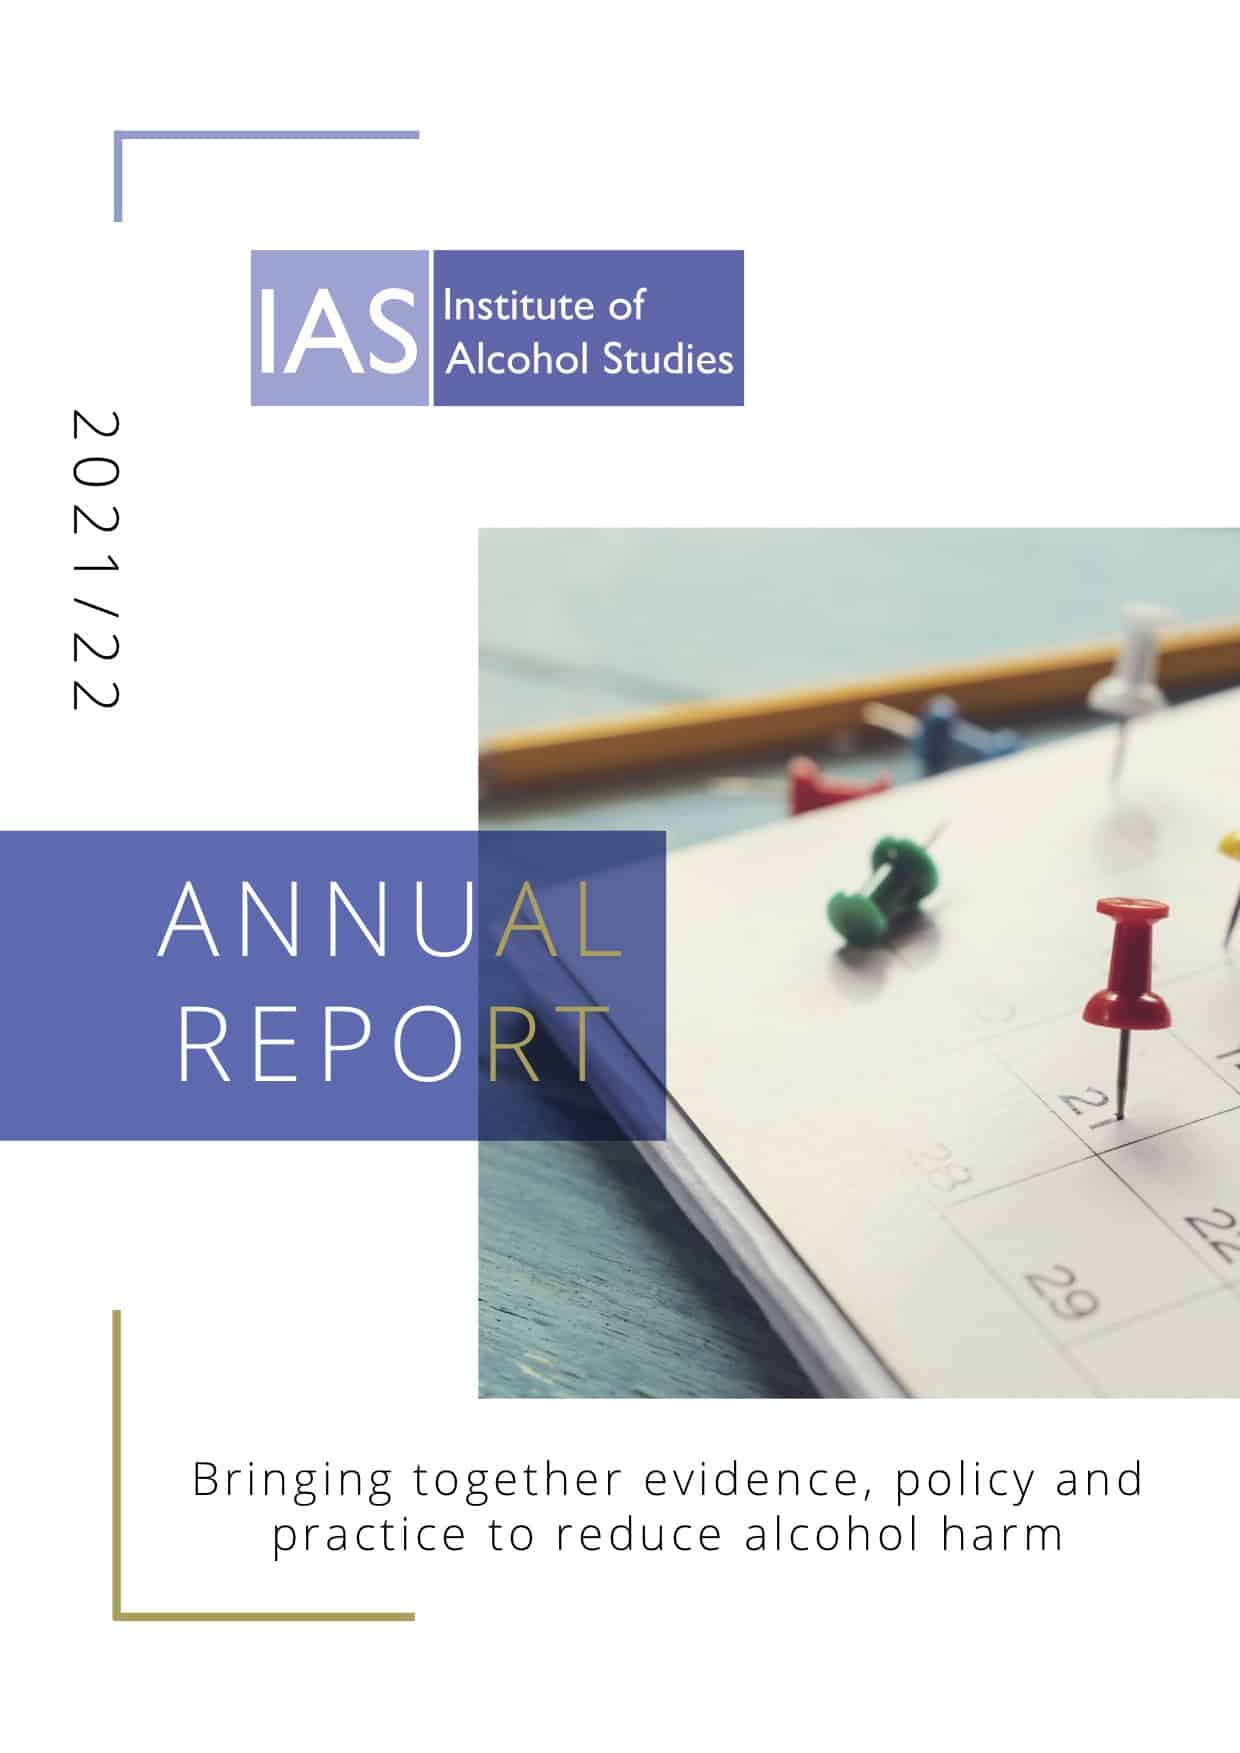 IAS Annual Report 2021/22